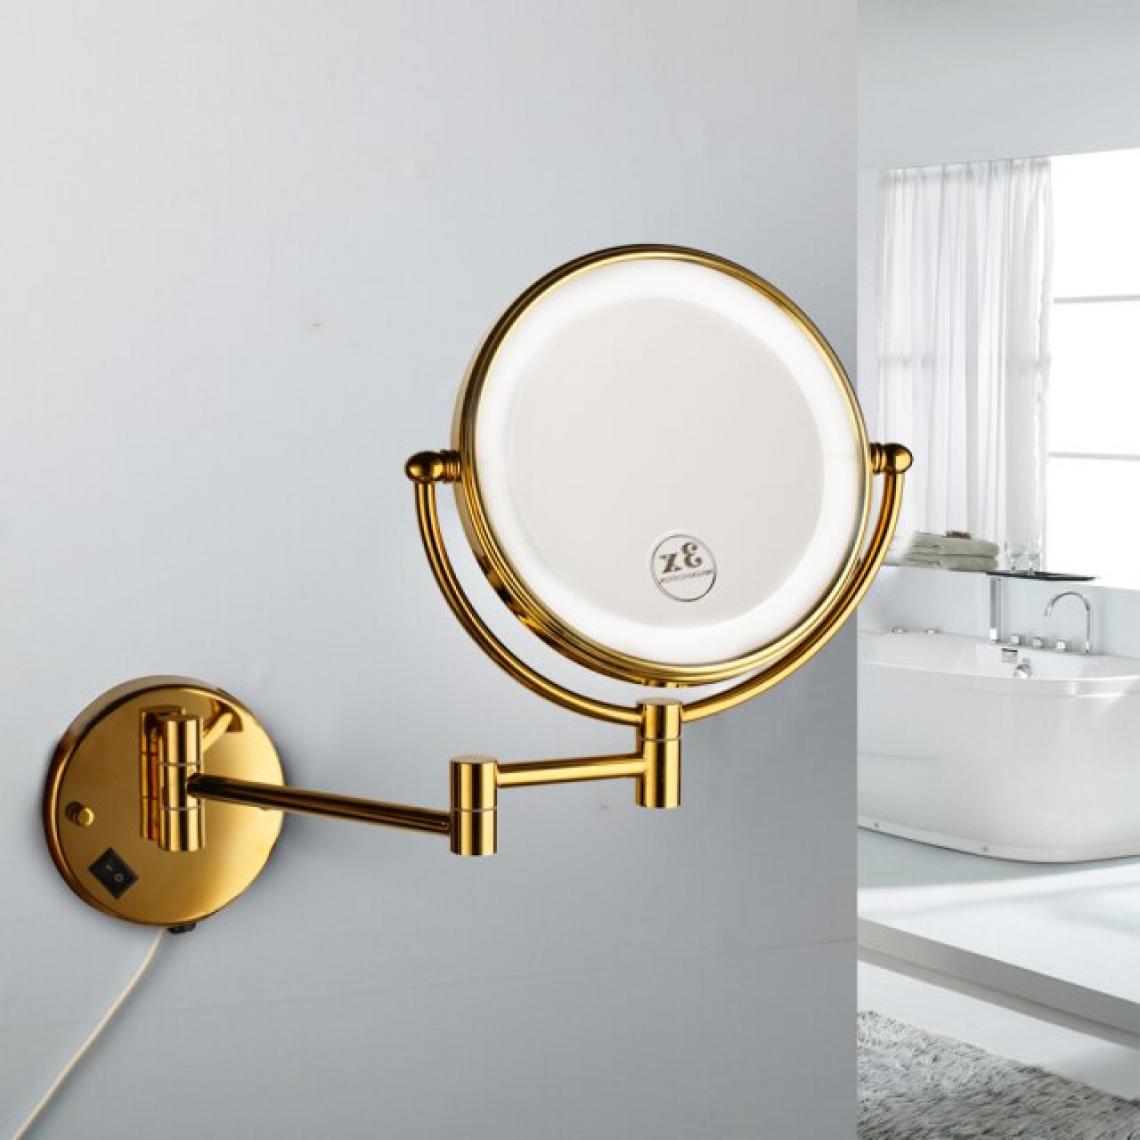 Universal - Miroir de toilette de la salle de bains Lampe dorée Perforée Accrochage mural libre Pliant Amplificateur réversible télescopique Miroir de toilette de la salle de bains(Or) - Miroir de salle de bain